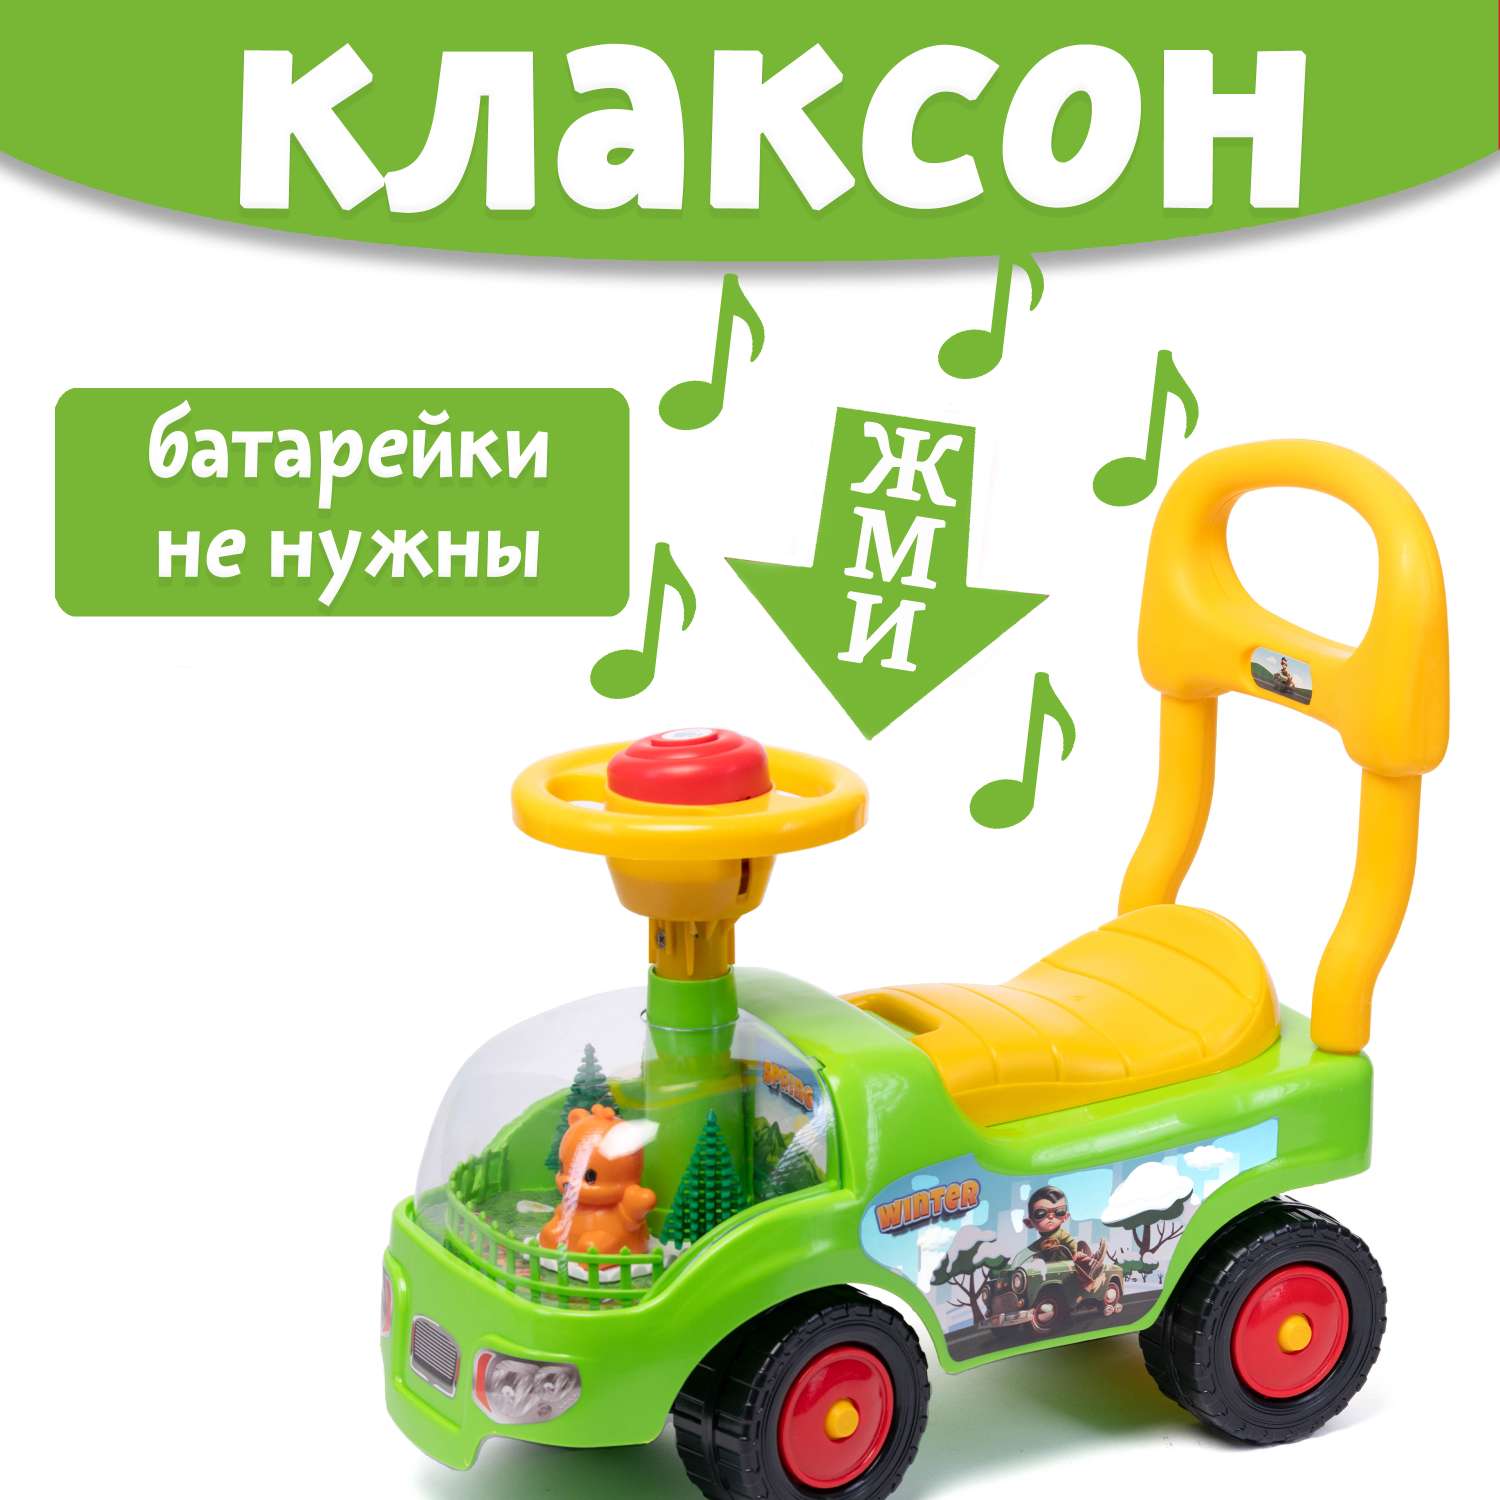 Машина каталка Нижегородская игрушка 134 Зеленая - фото 2